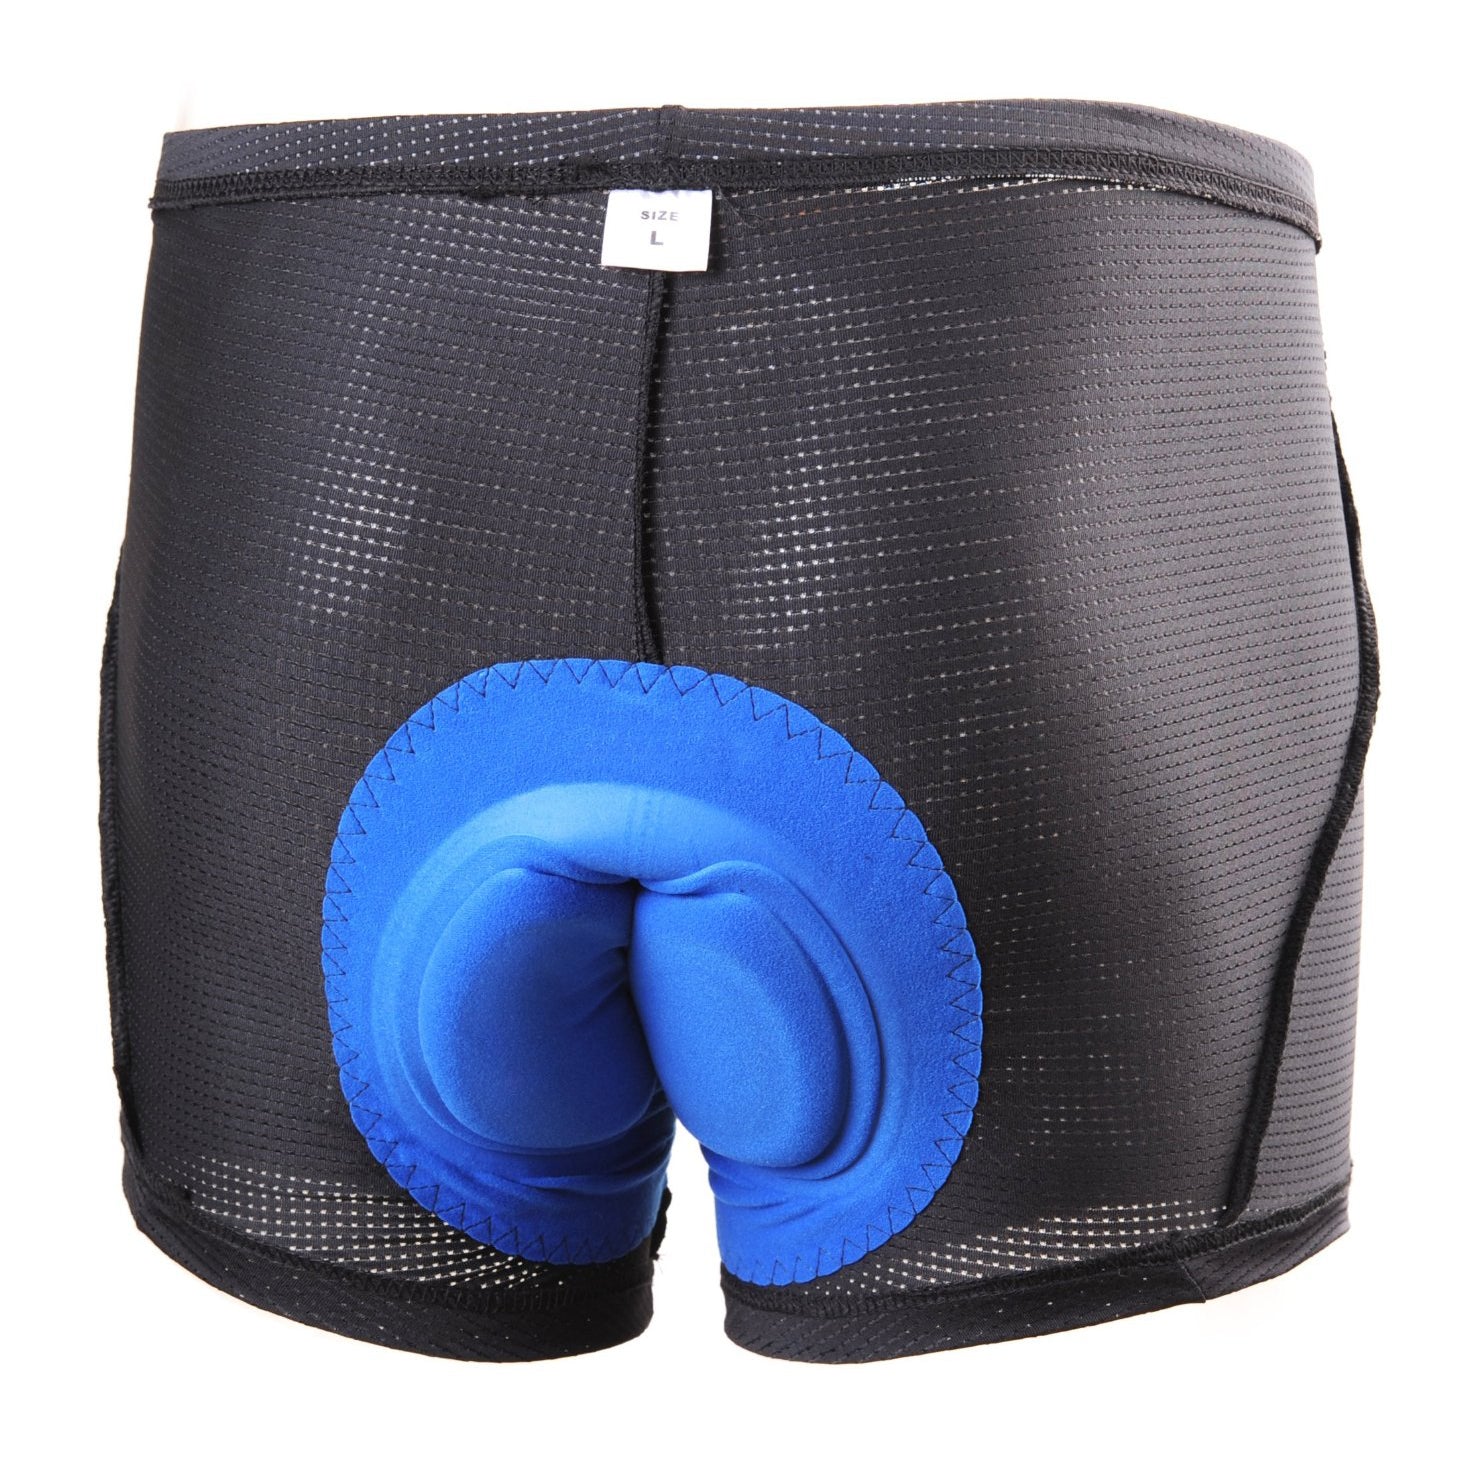 underwear under bike shorts